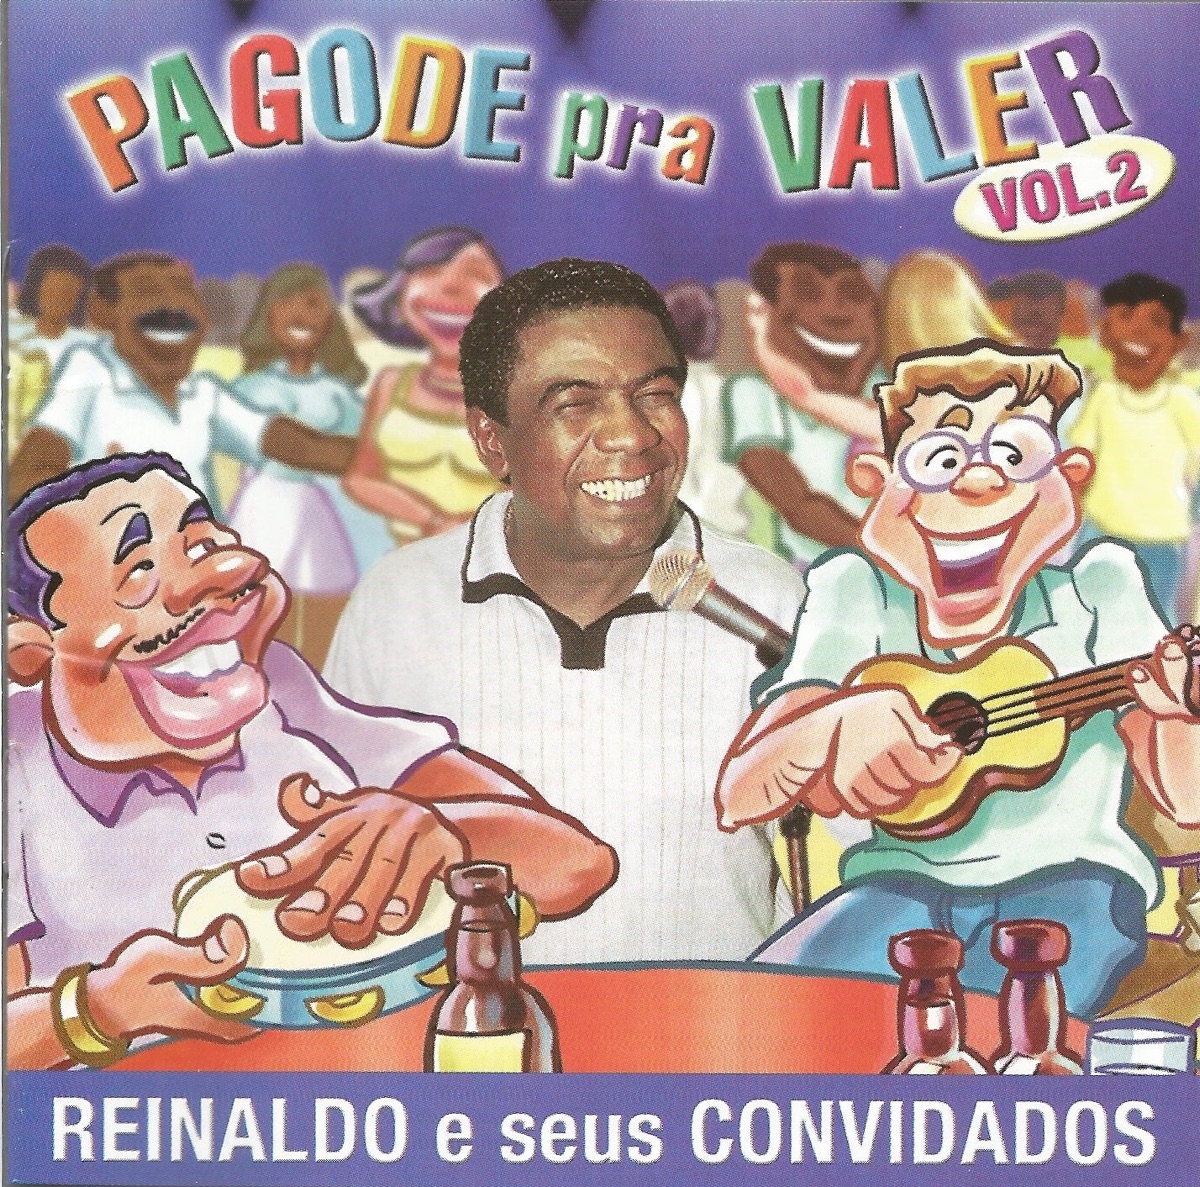 Samba-Okê - Vou Pro Sereno e Reinaldo, O Príncipe do Pagode - Trapaças do  Amor